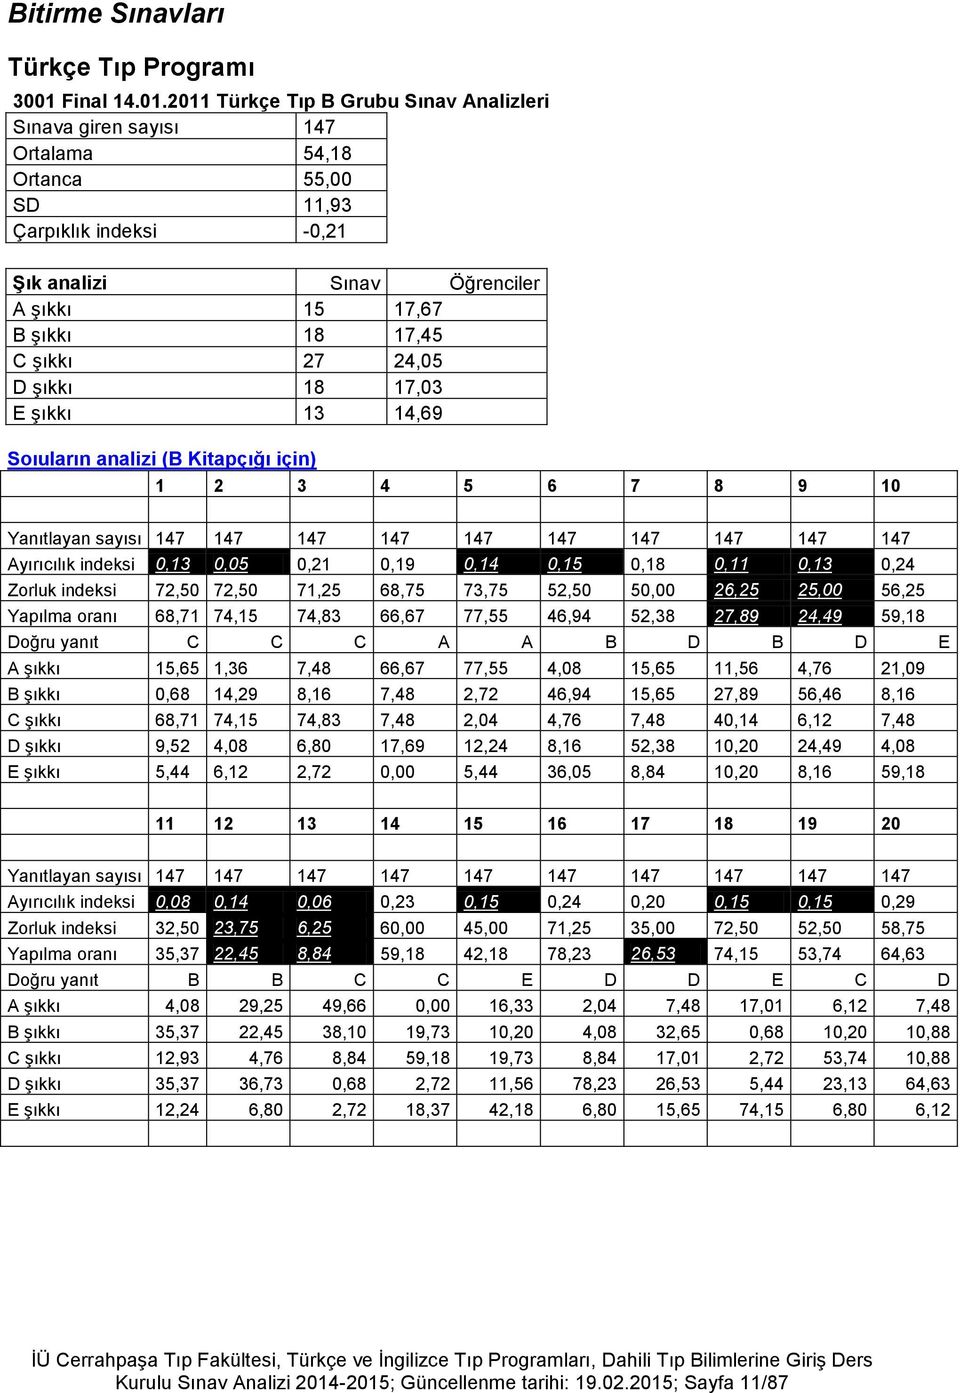 2011 Türkçe Tıp B Grubu Sınav Analizleri Sınava giren sayısı 147 Ortalama 54,18 Ortanca 55,00 SD 11,93 Çarpıklık indeksi -0,21 Şık analizi Sınav Öğrenciler A şıkkı 15 17,67 B şıkkı 18 17,45 C şıkkı